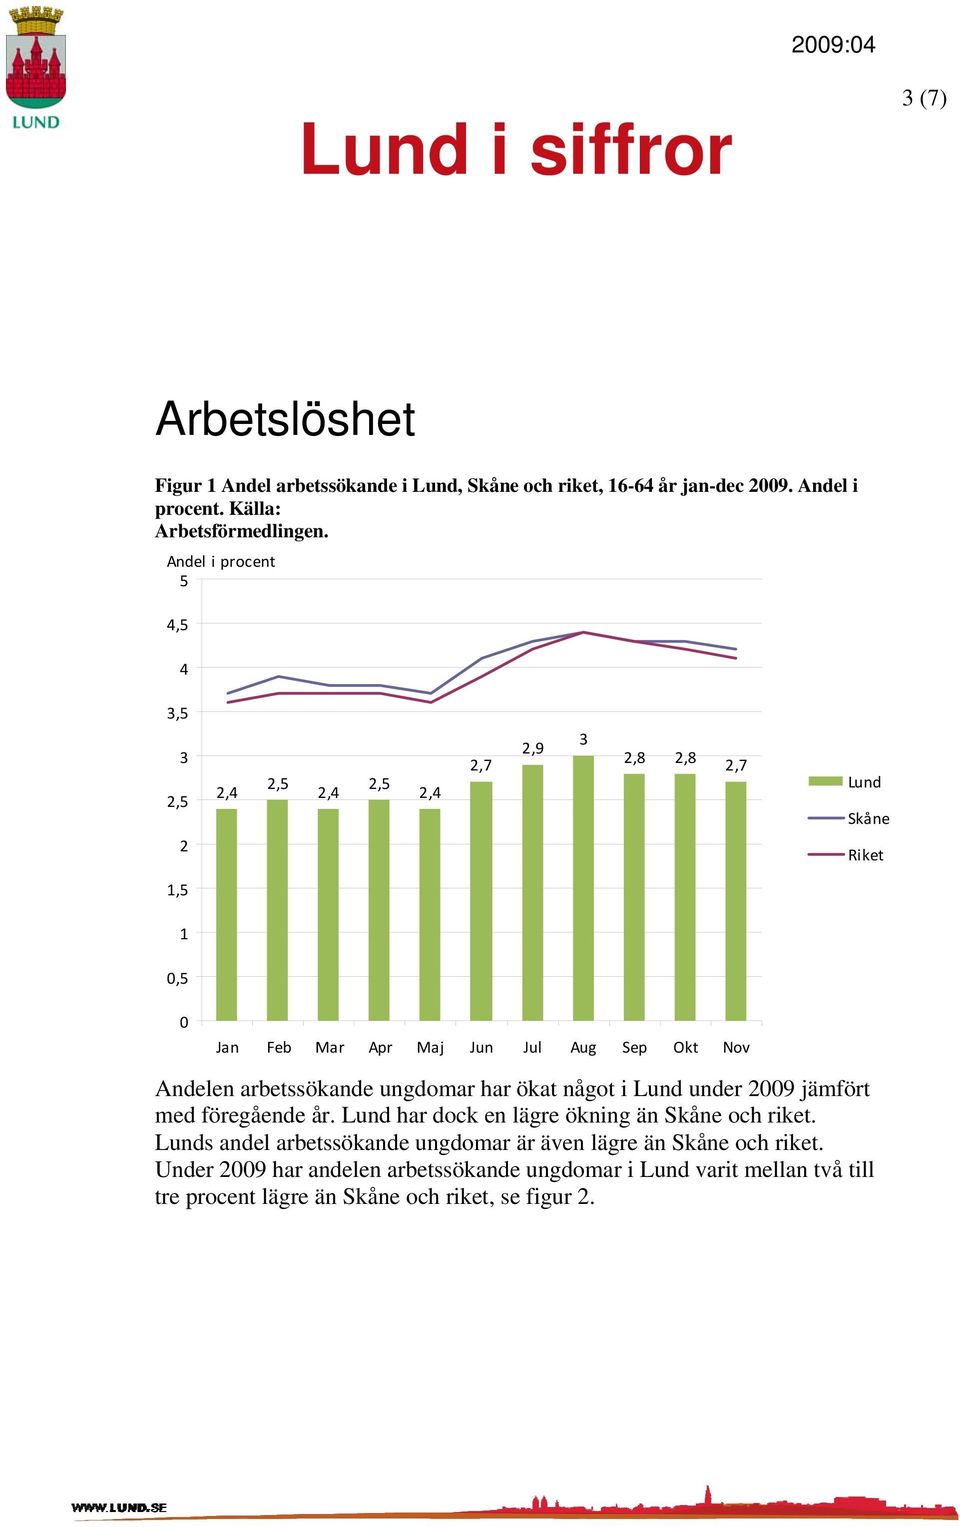 ungdomar har ökat något i Lund under 29 jämfört med föregående år. Lund har dock en lägre ökning än Skåne och riket.